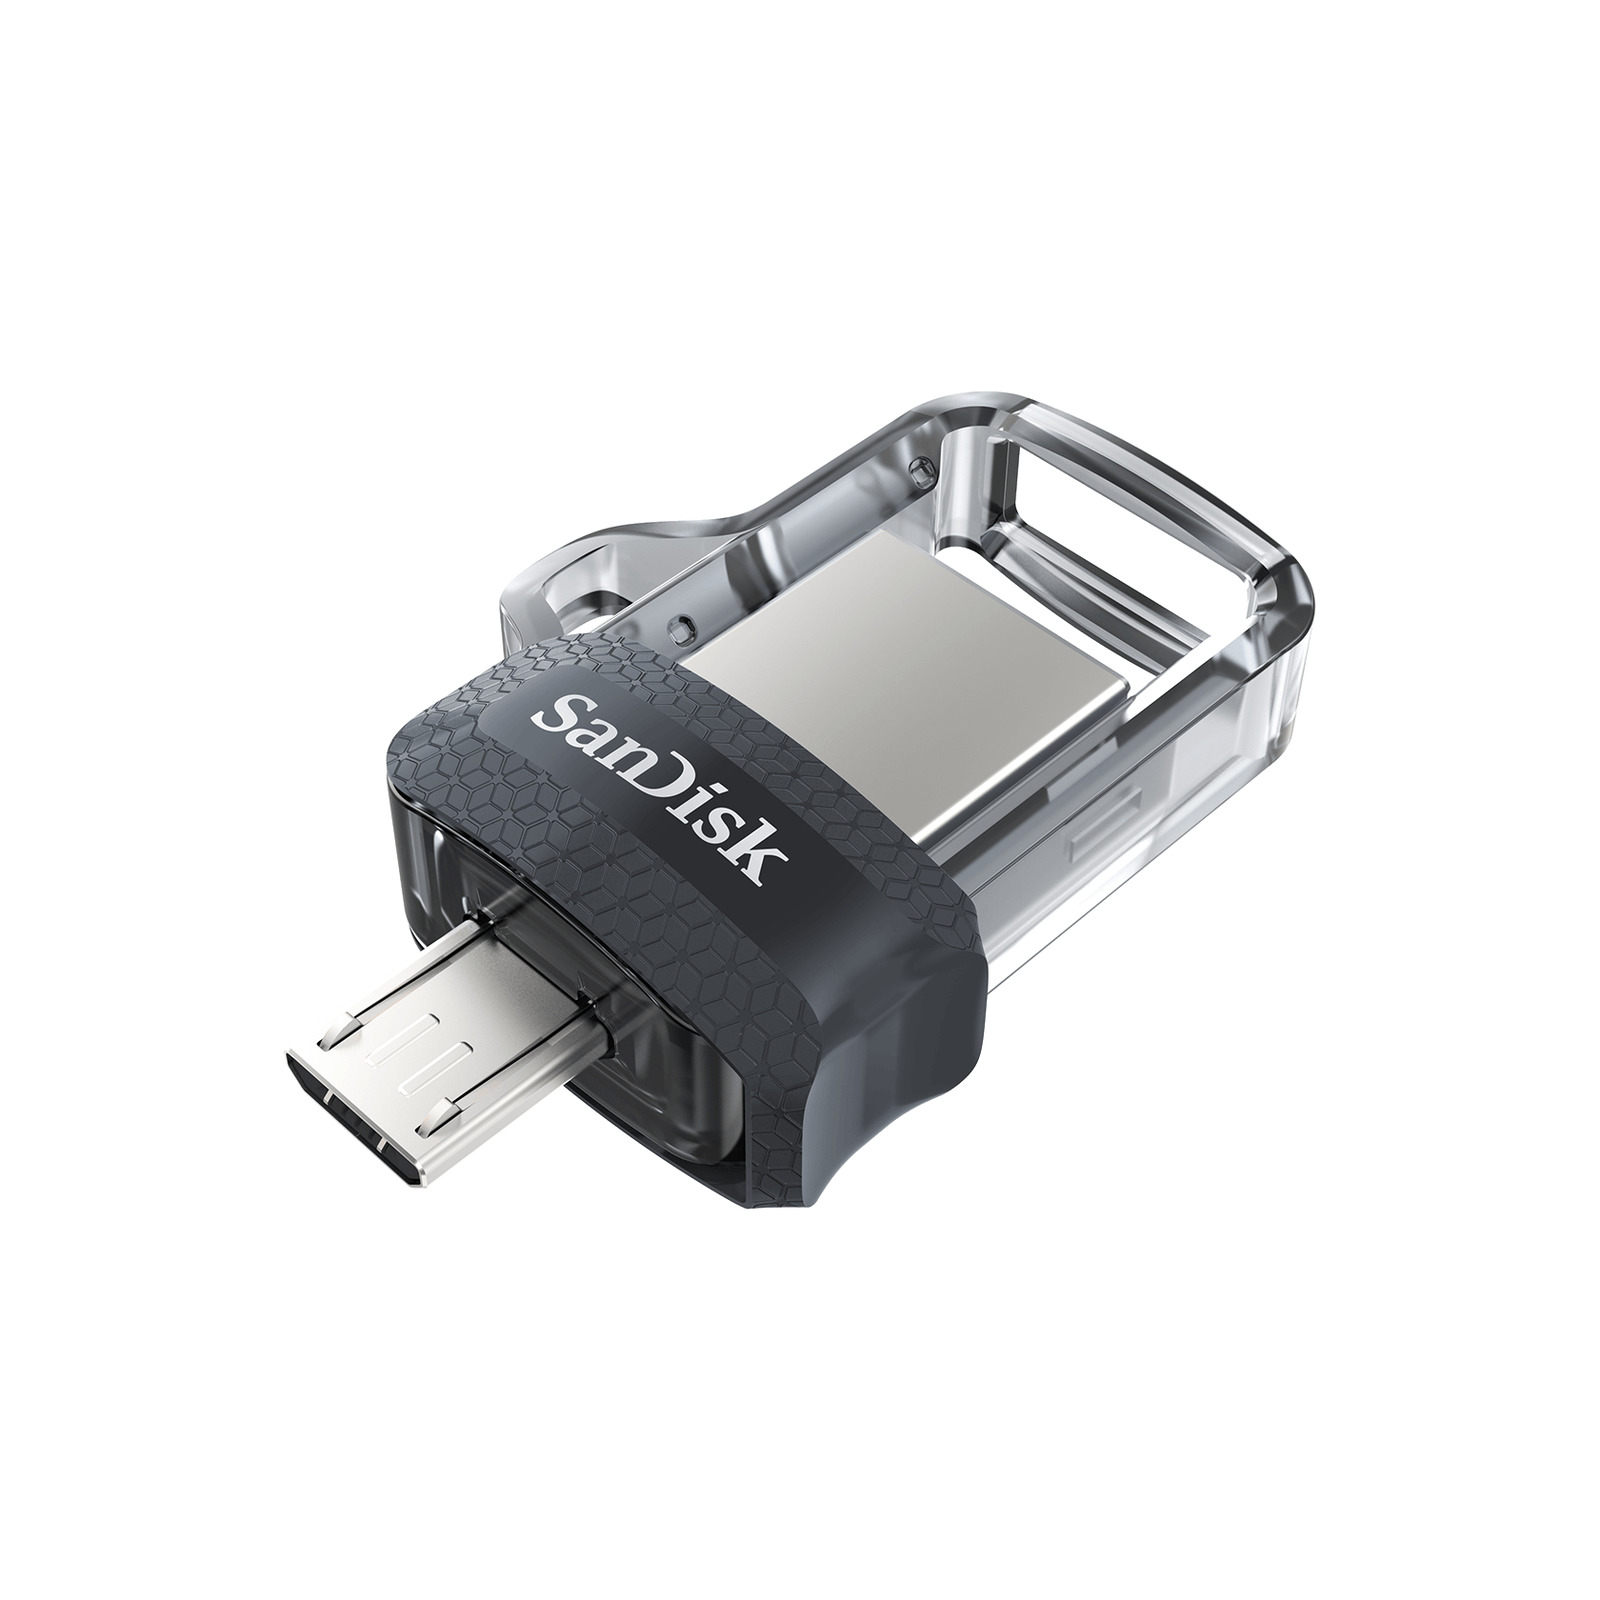 SanDisk 64GB Ultra Dual Drive m3.0 micro-USB USB 3.0 Flash Drive SDDD3-064G-A46